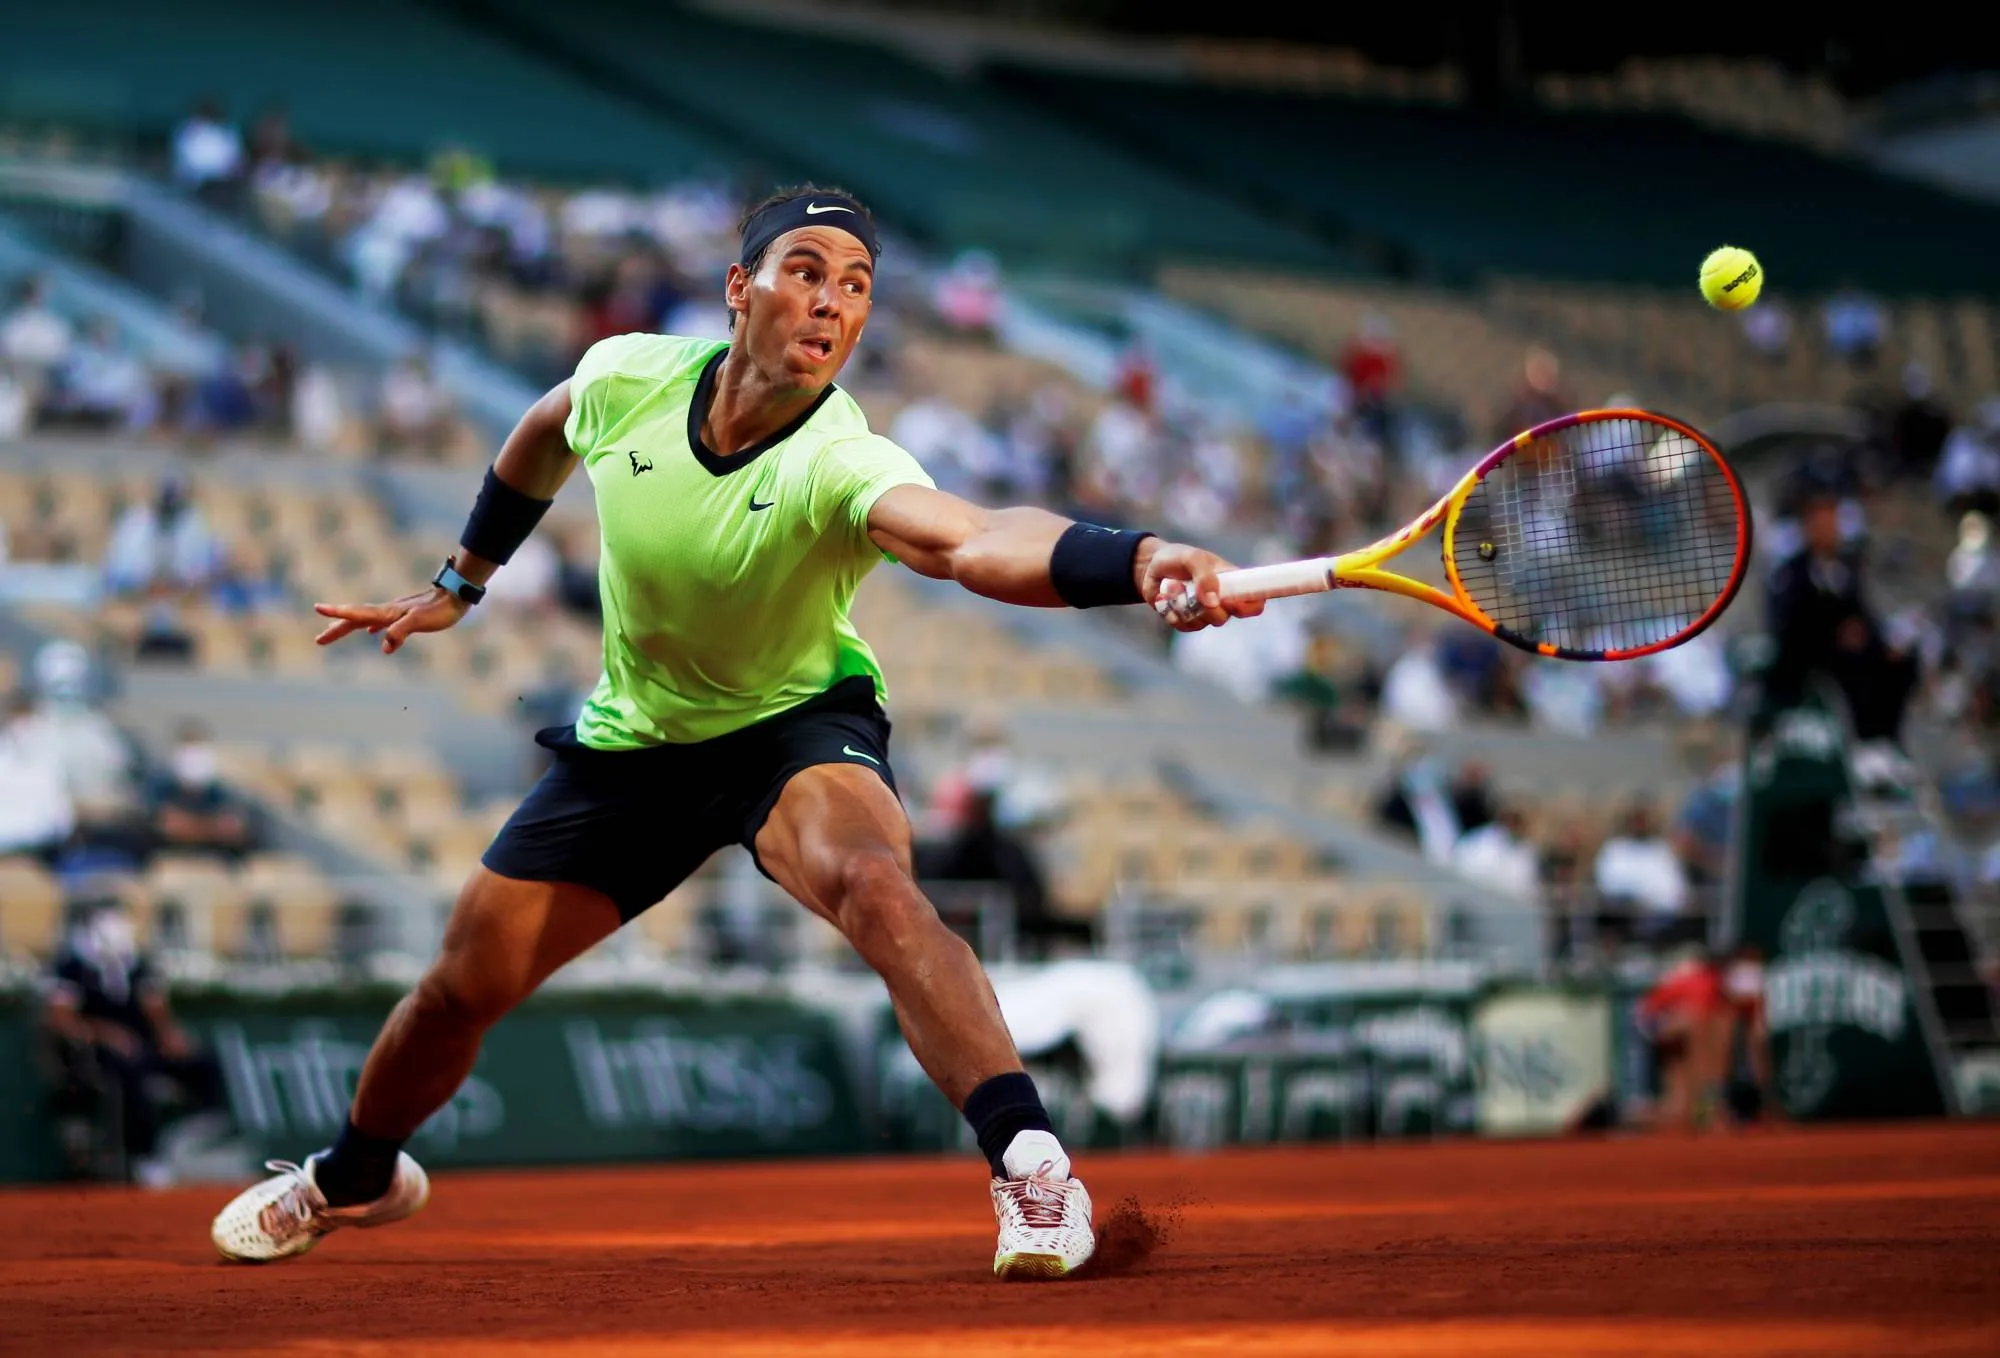 Roland Garros 2021: Nadal lần thứ 15 vào Tứ kết - Djokovic ngược dòng đi tiếp